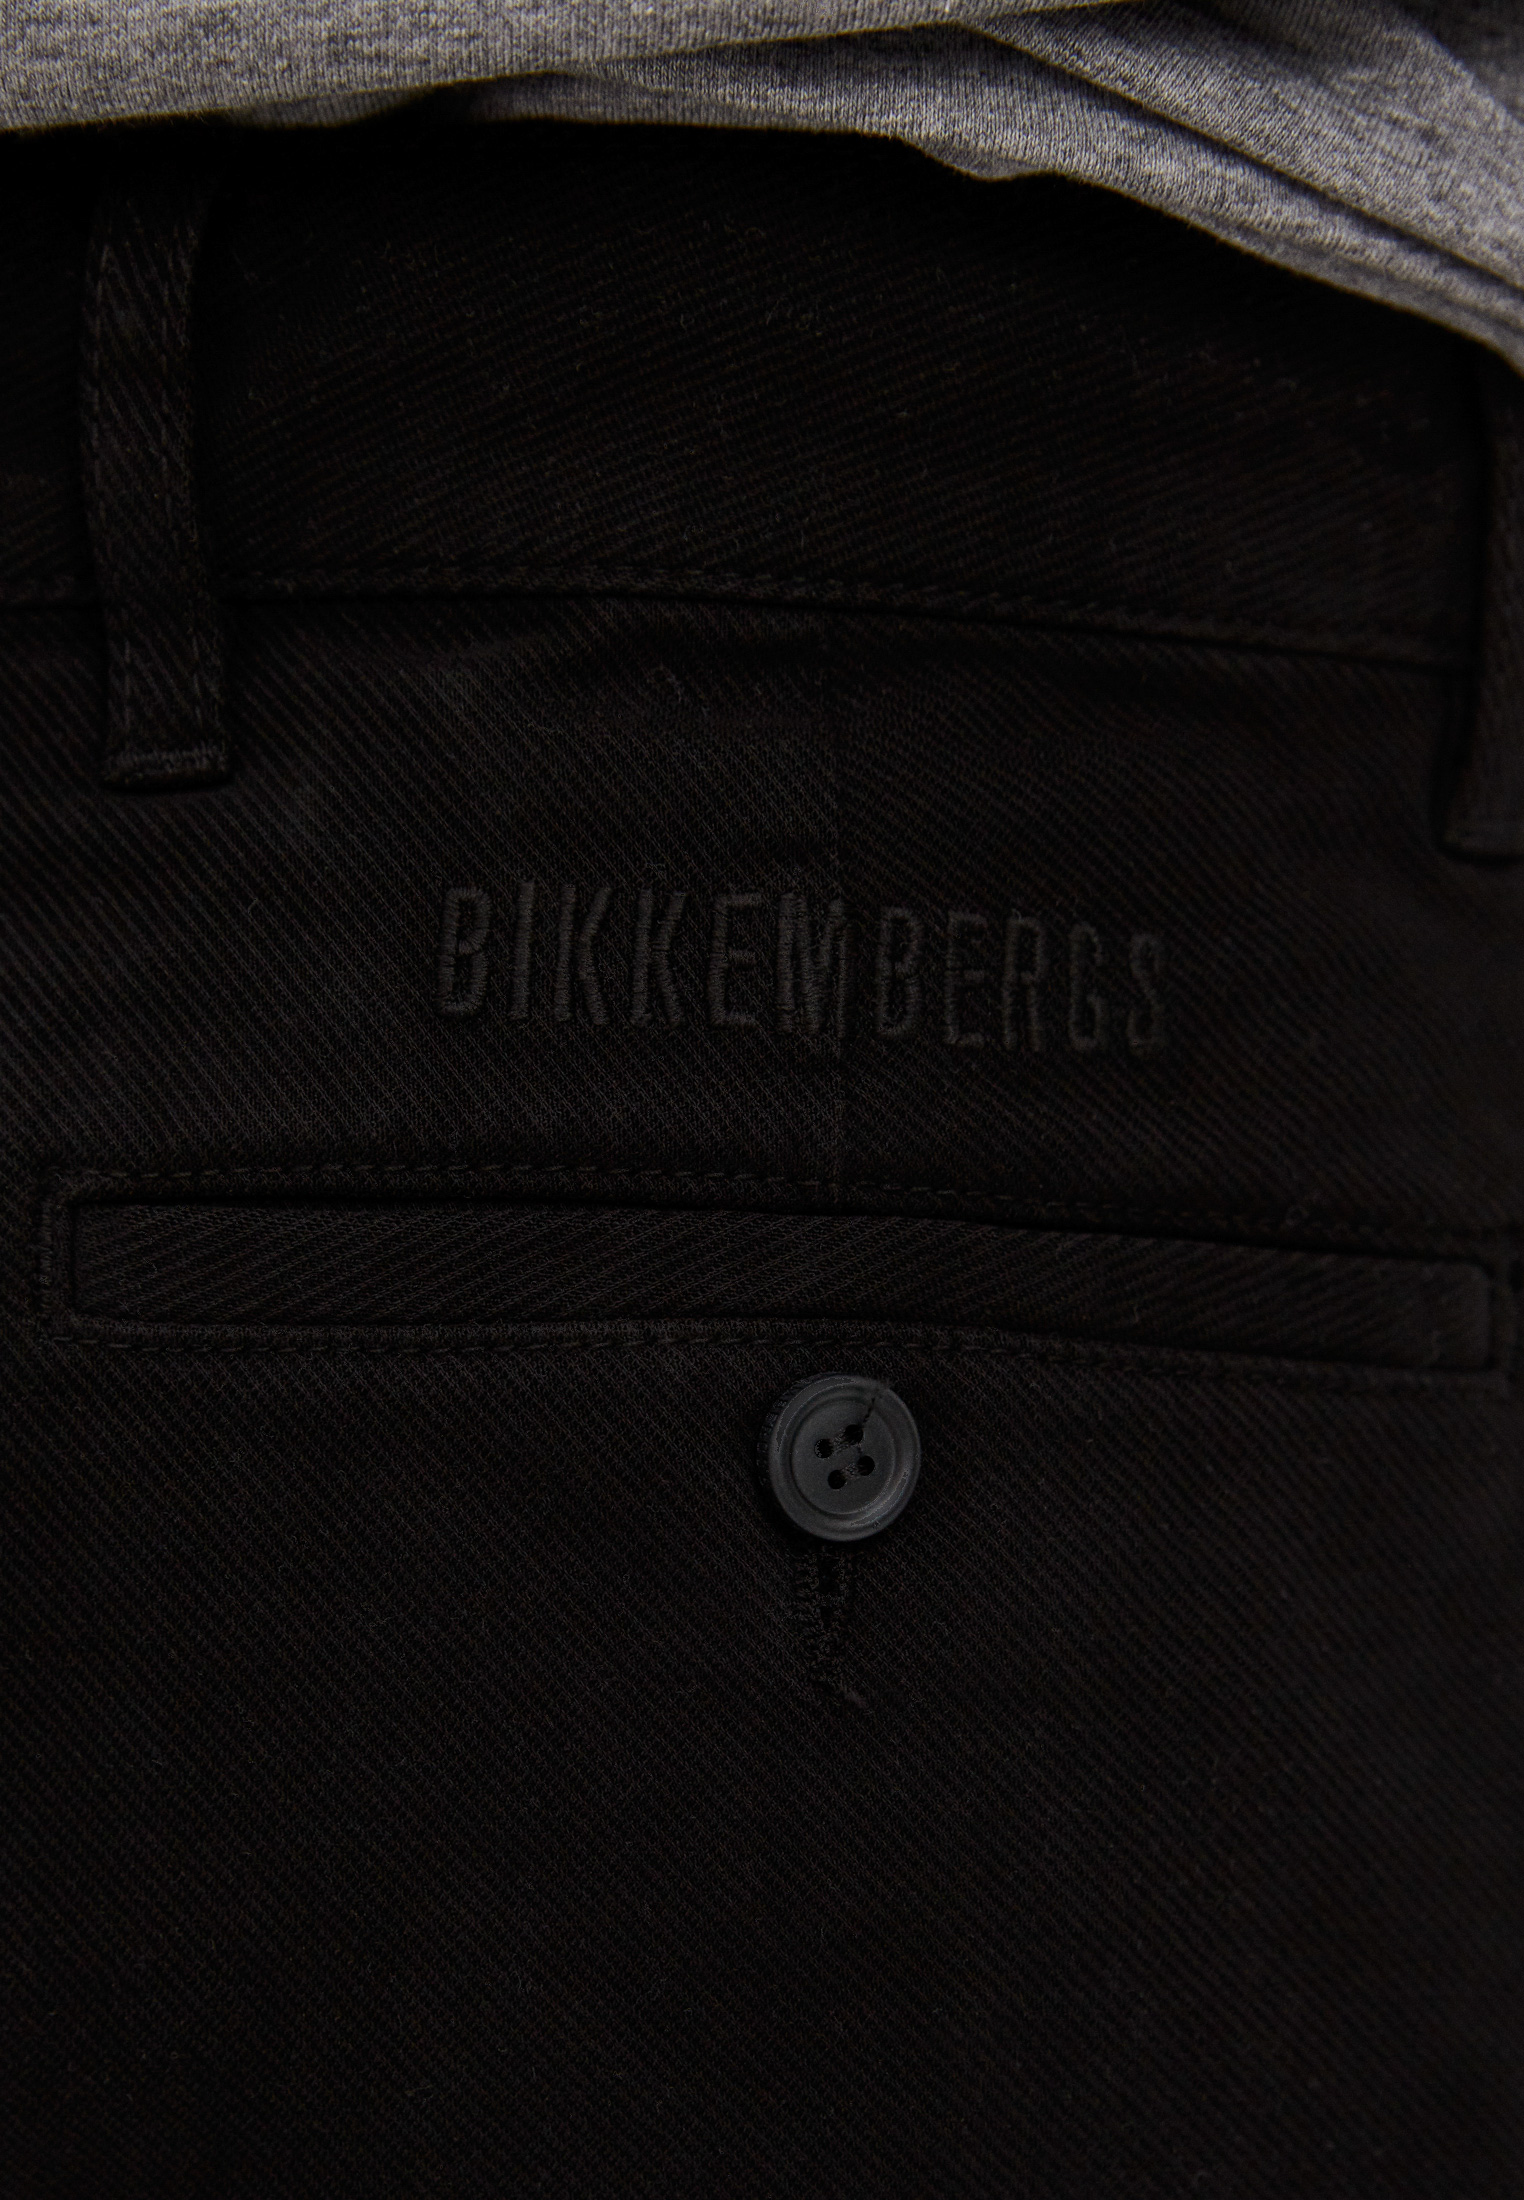 Мужские повседневные брюки Bikkembergs (Биккембергс) C P 001 04 S 3472: изображение 15